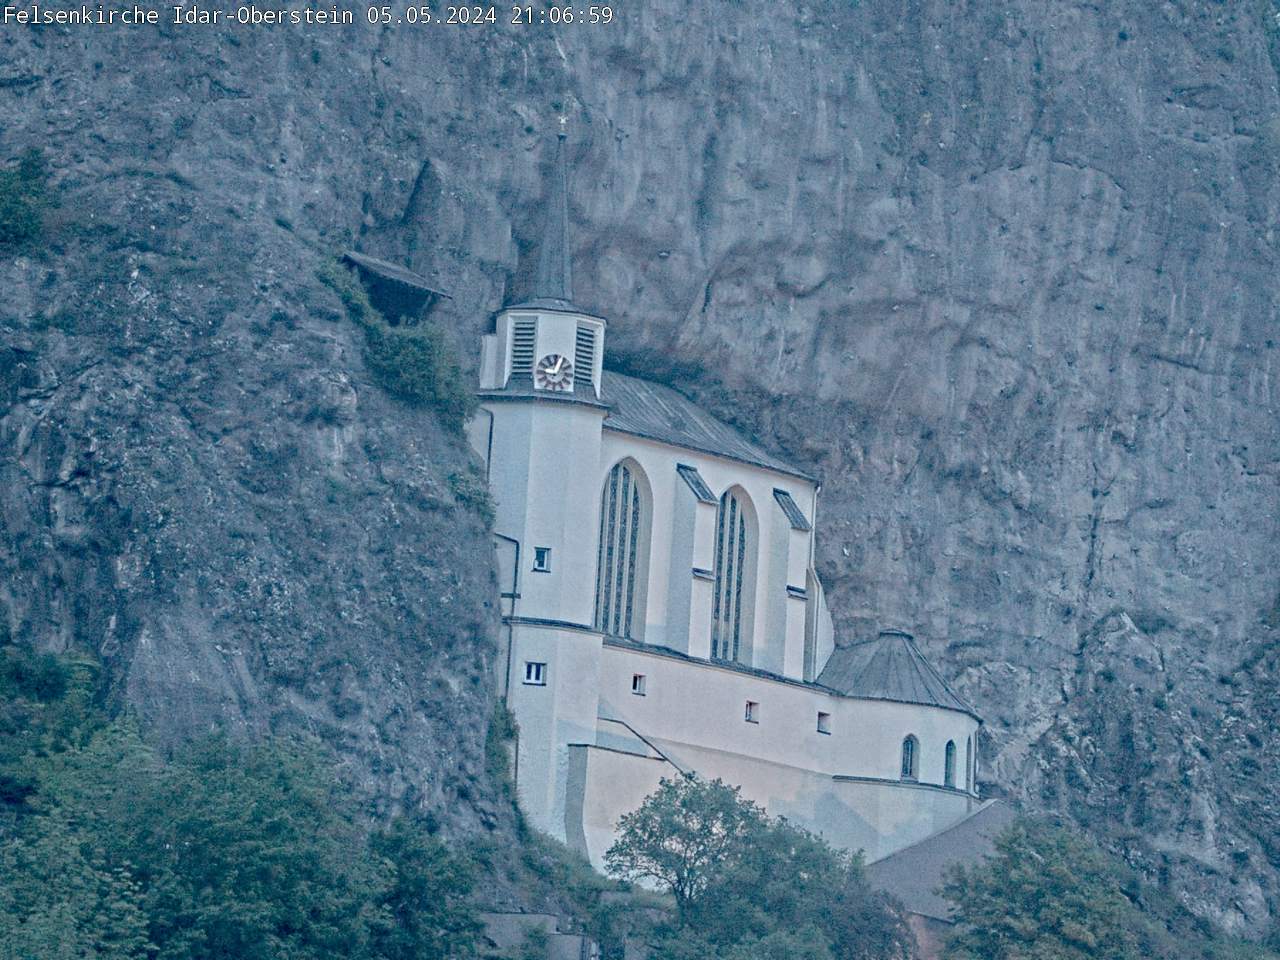 Webcam-Bild Felsenkirche